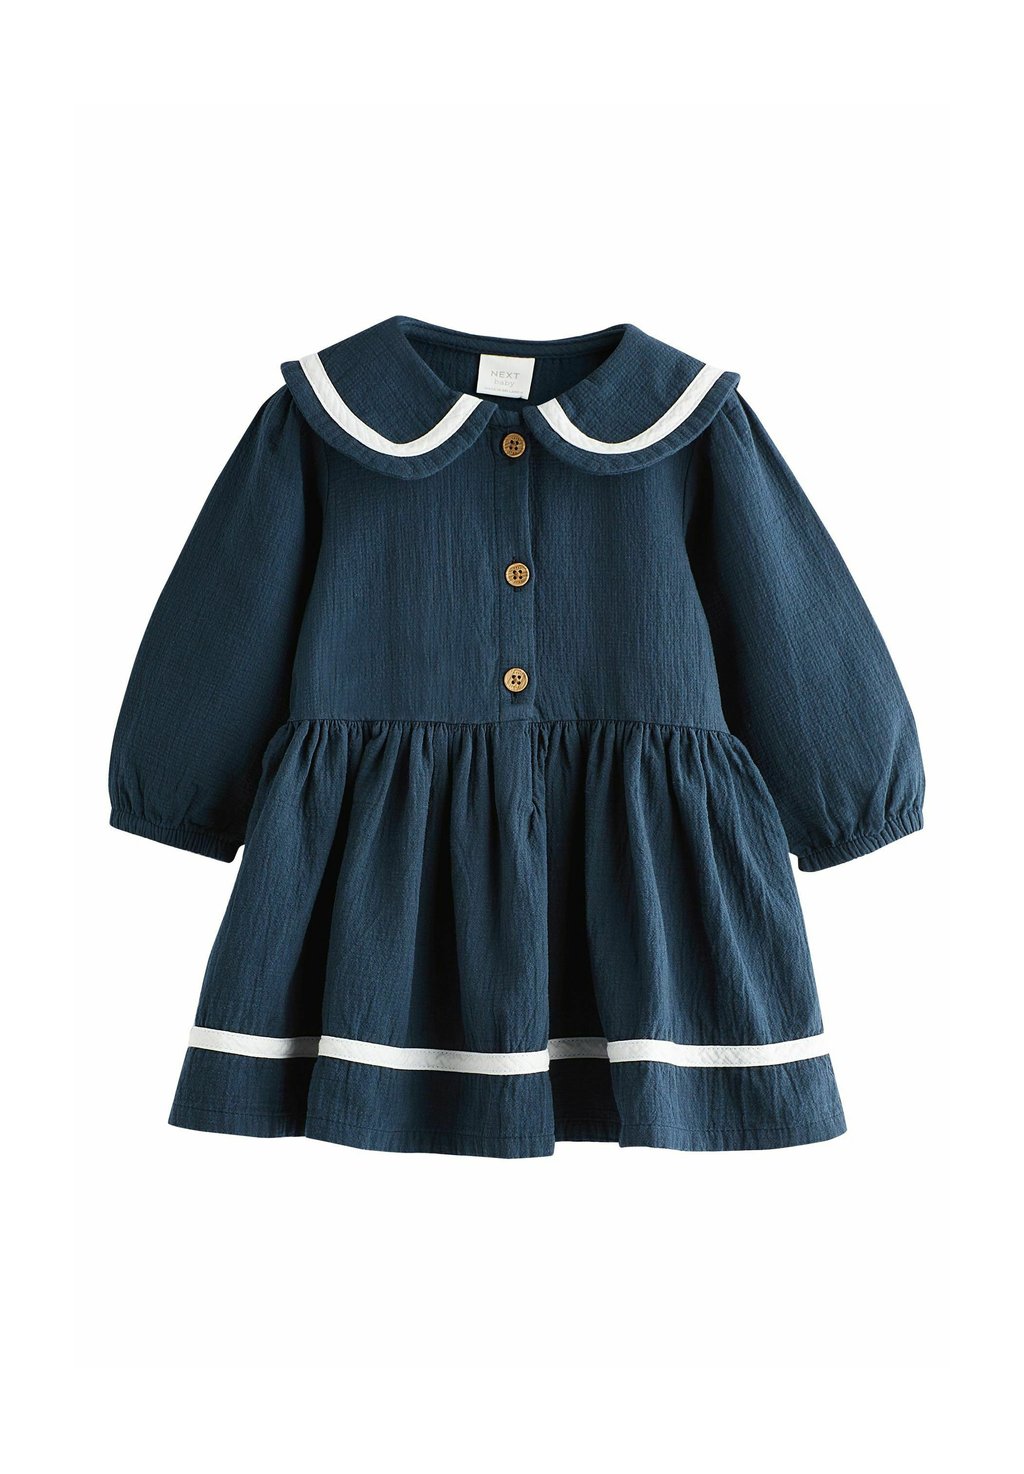 Дневное платье REGULAR FIT Next, цвет navy blue sailor